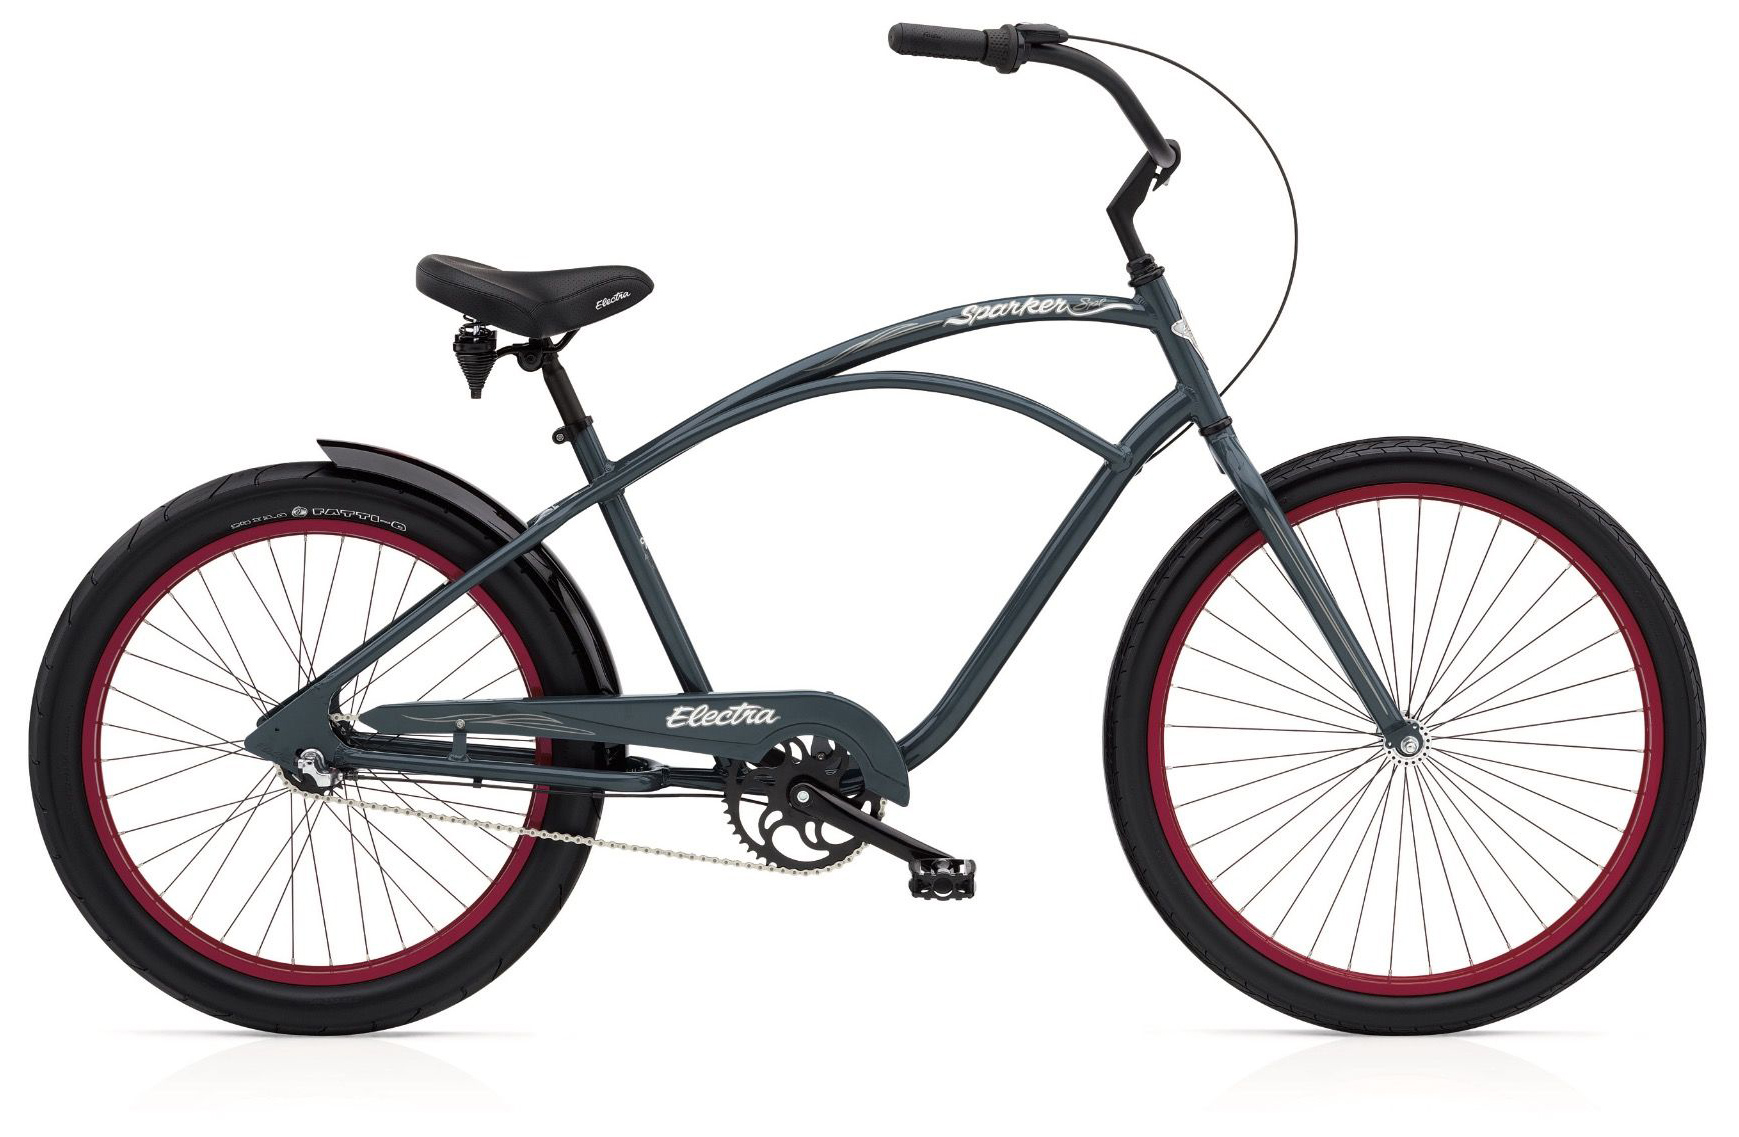  Отзывы о Велосипеде круизере Electra Sparker Special 3i 2019